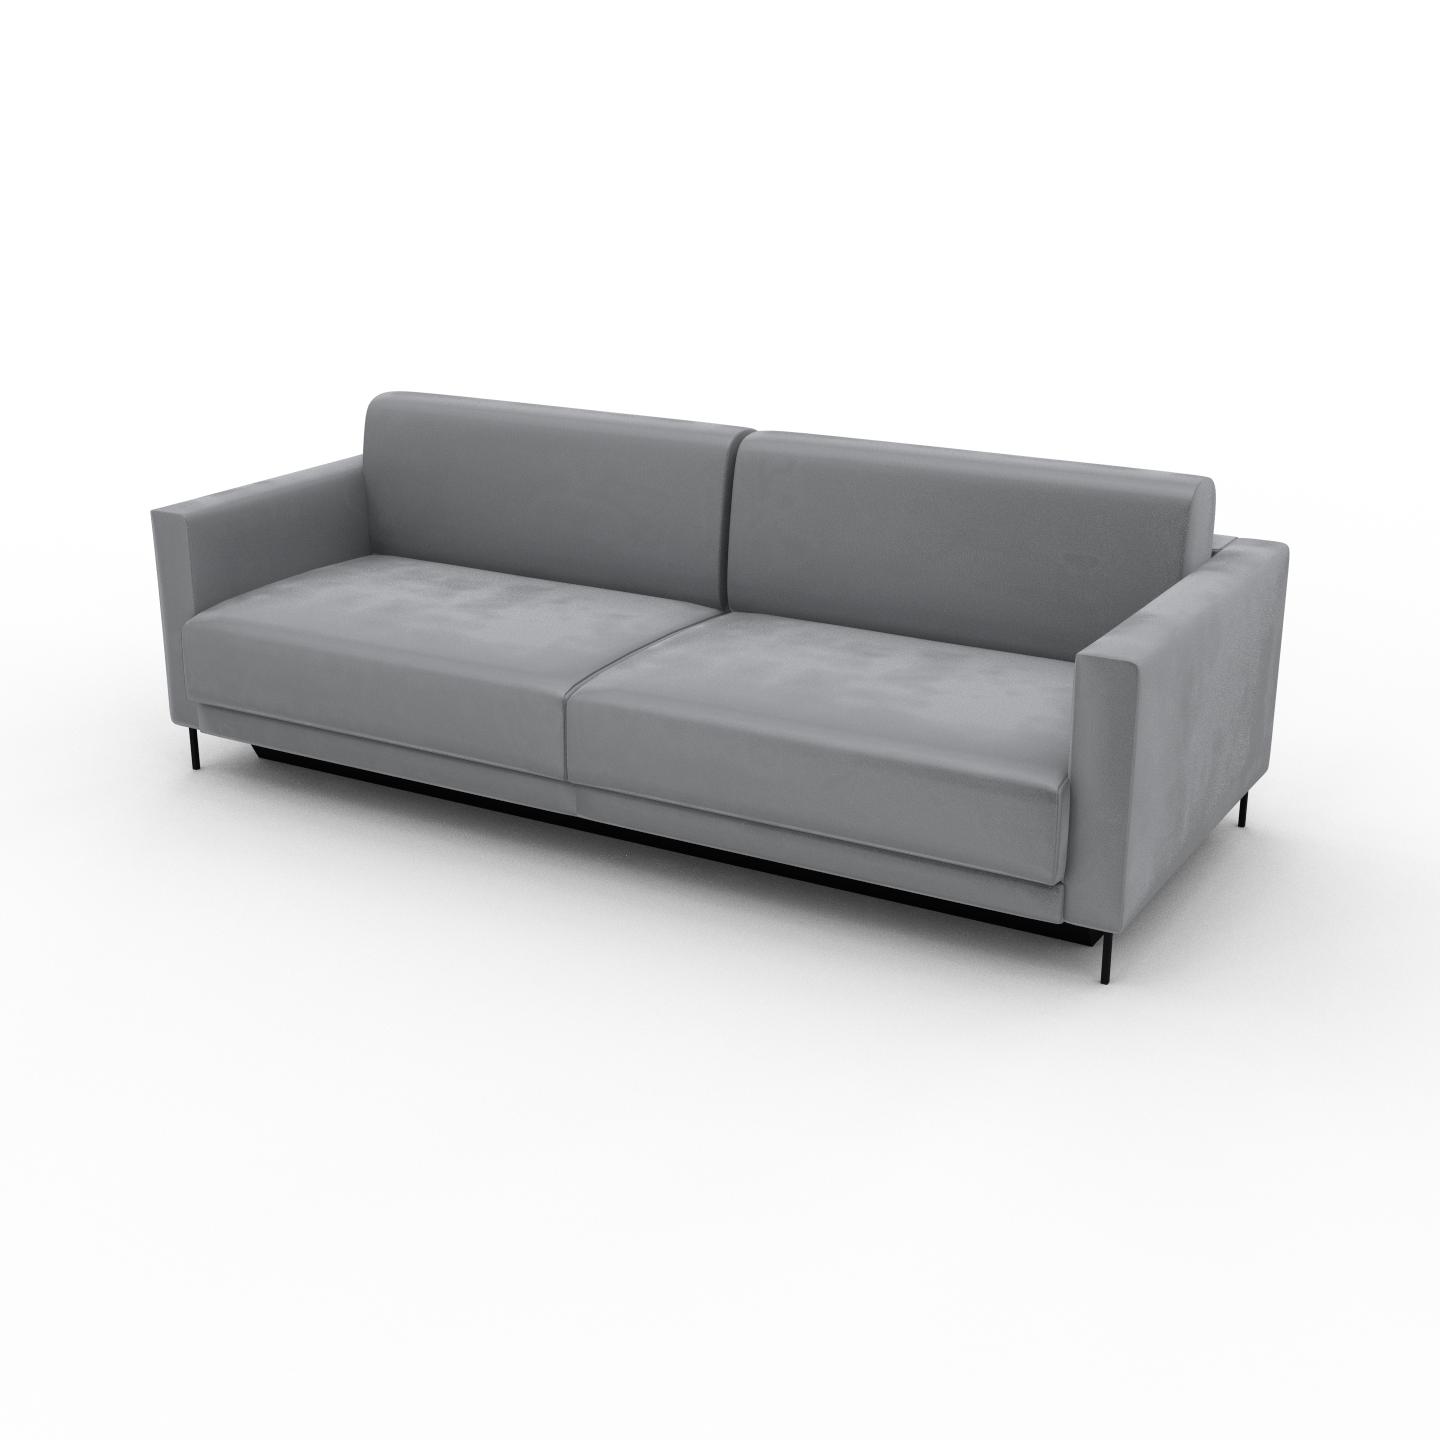 MYCS Sofa 3-Sitzer Samt Sandgrau Samt - Elegantes, gemütliches 3-Sitzer Sofa: Hochwertige Qualität, einzigartiges Design - 224 x 75 x 98 cm, konfigurierbar